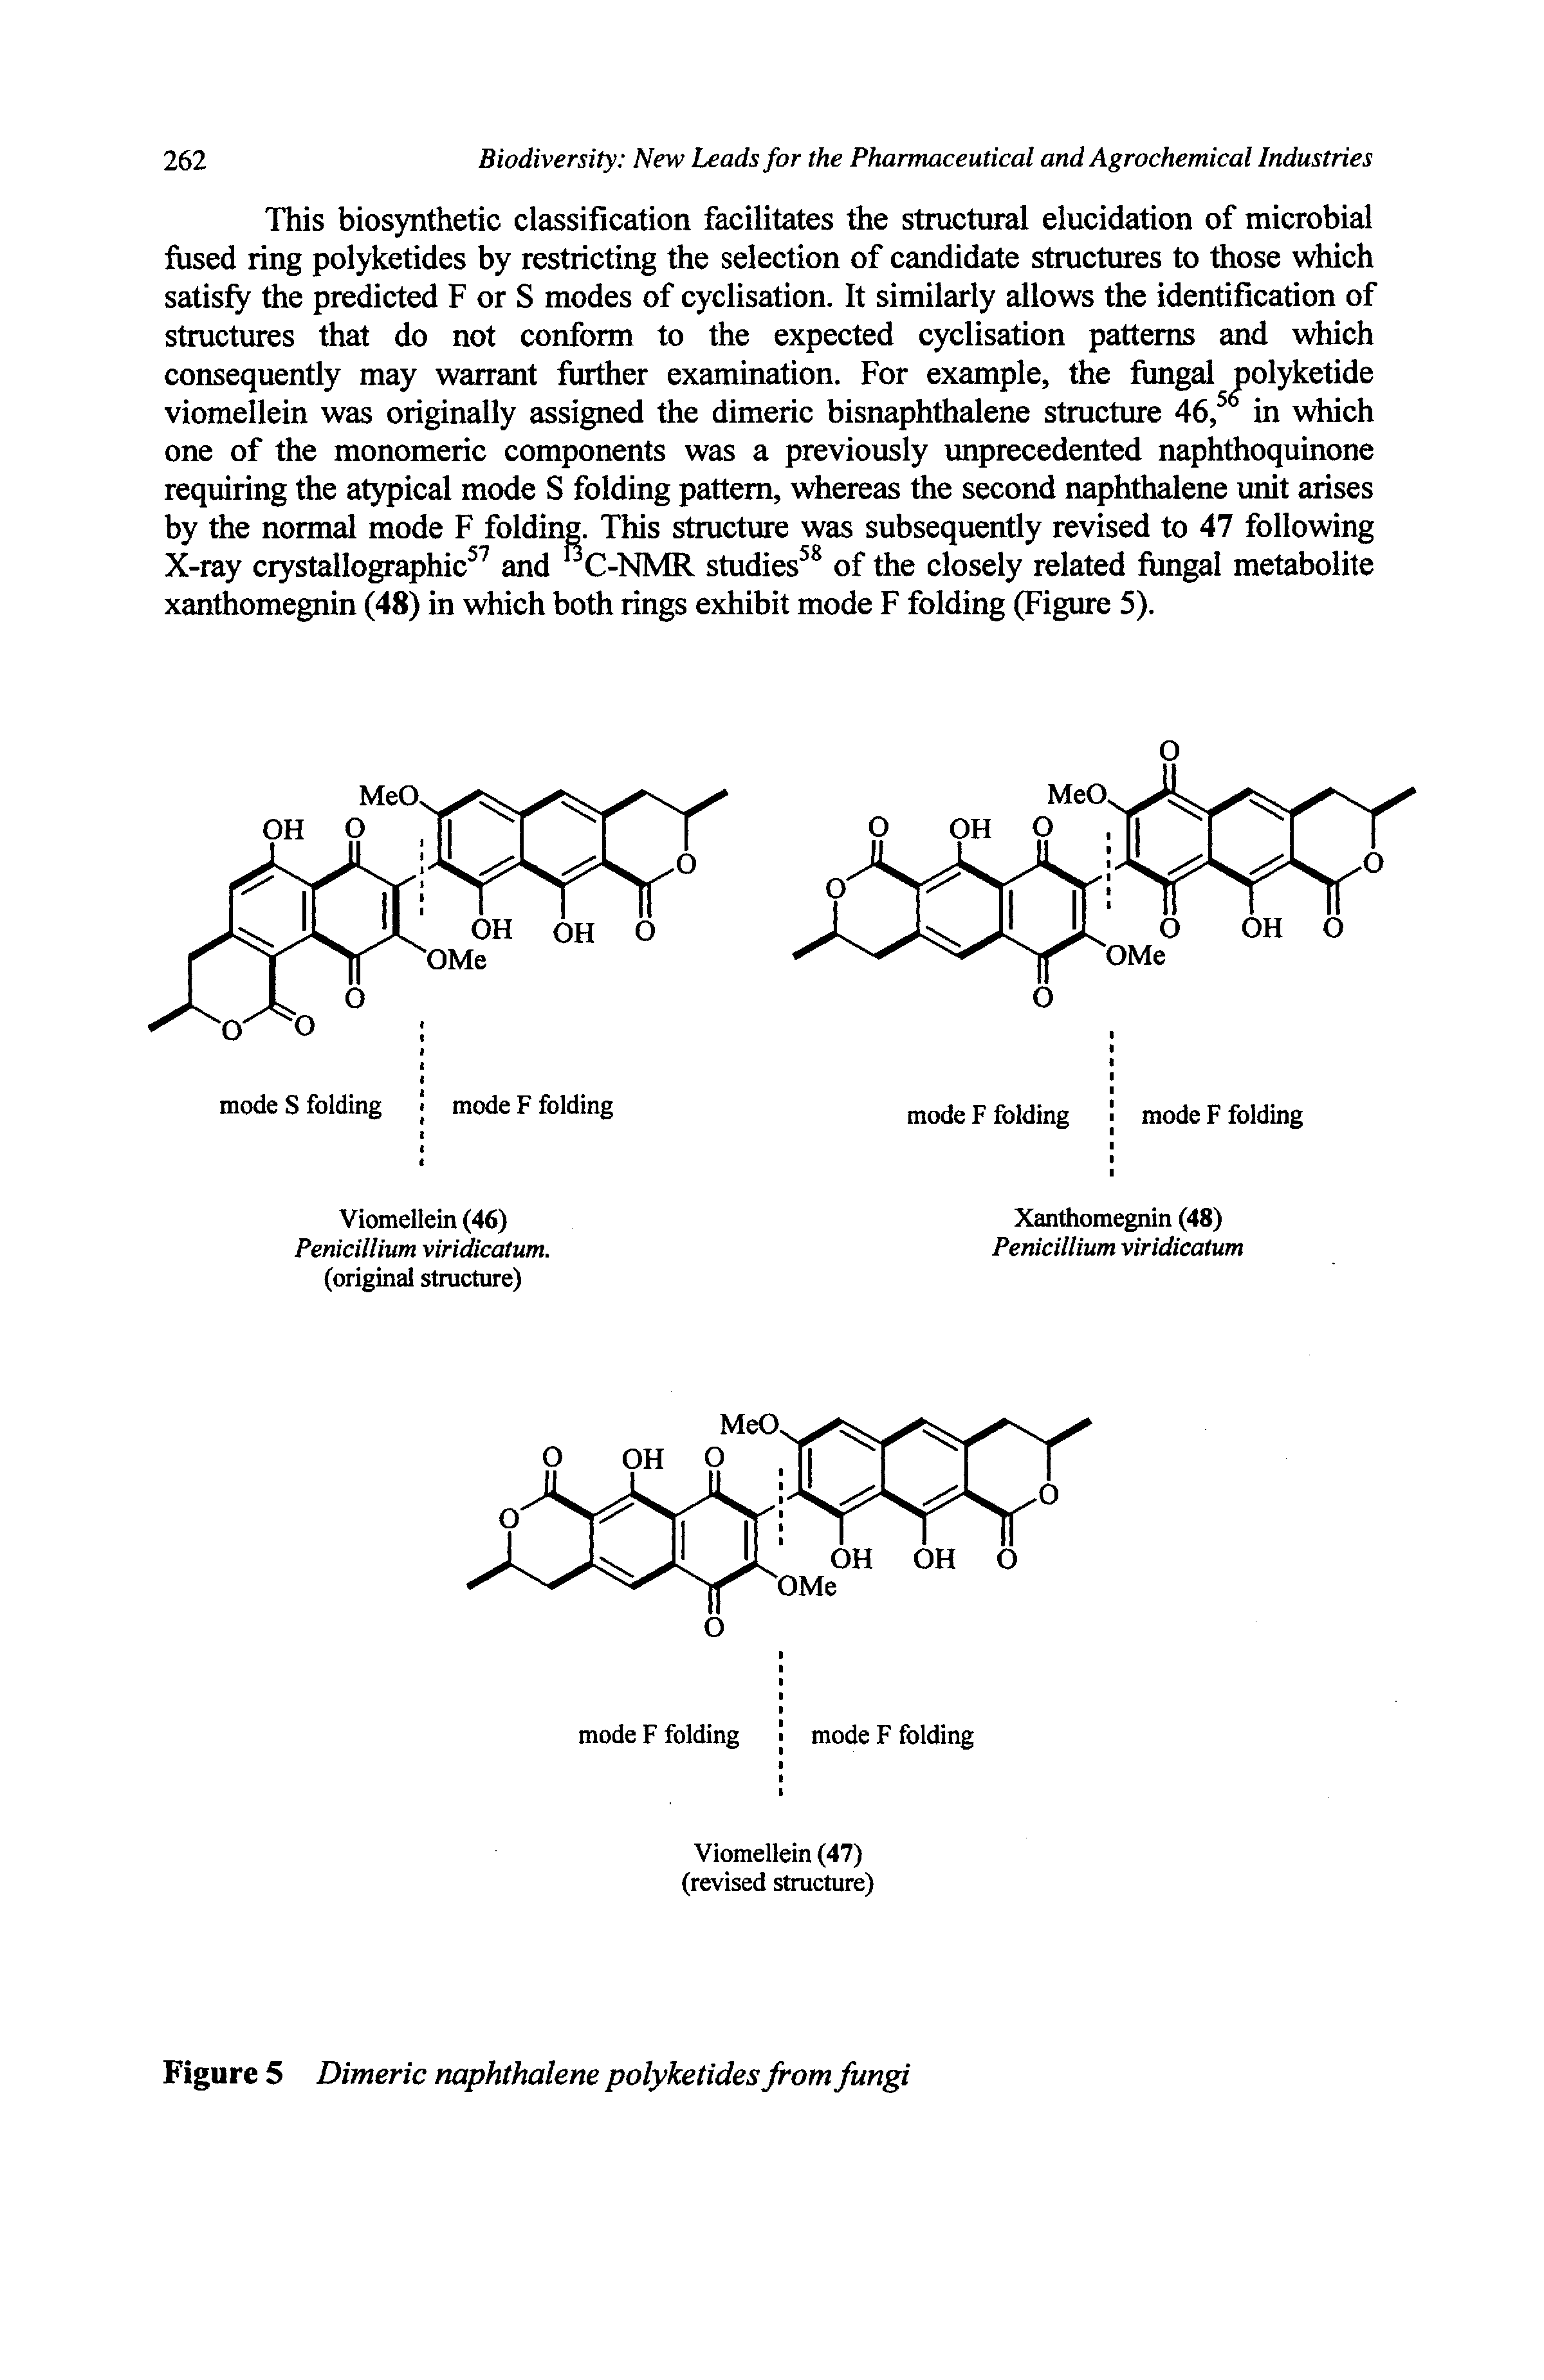 Figure 5 Dimeric naphthalene polyketides from fungi...